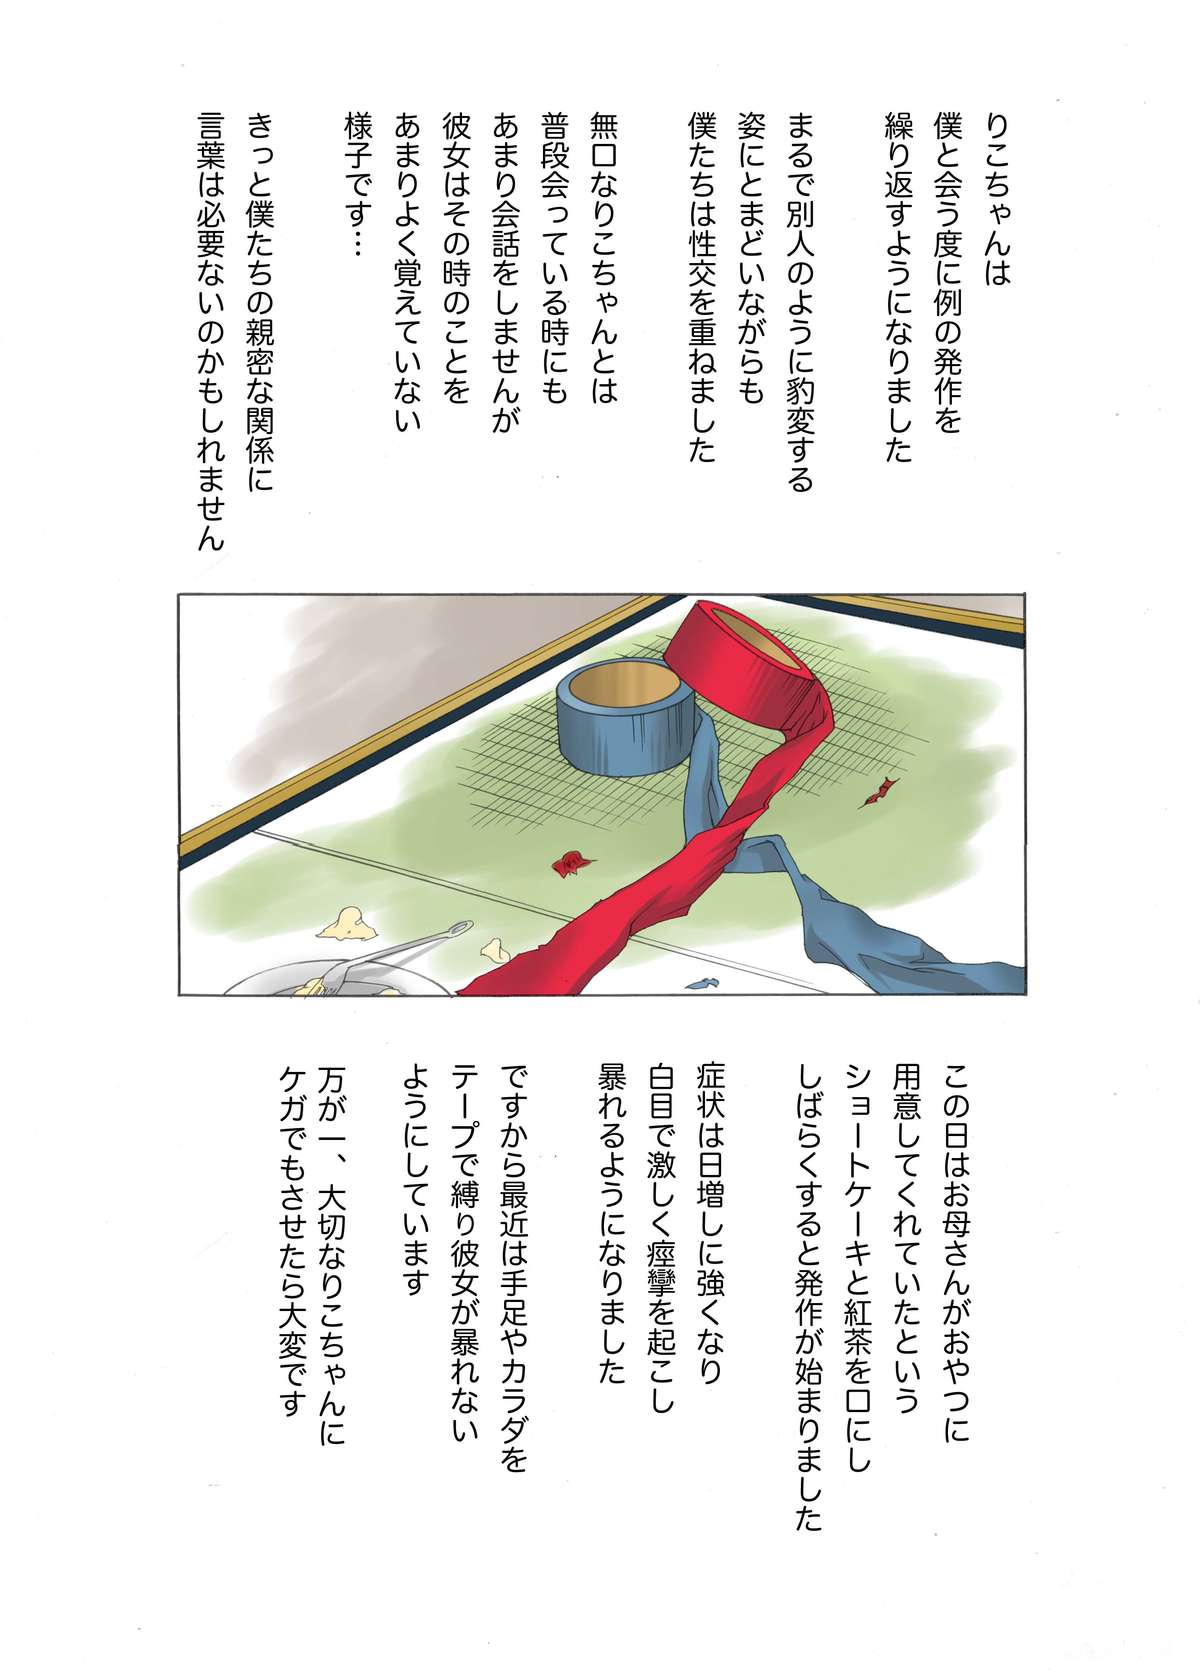 [Fuuga] Oyako koubi ~ Tonari ni Hikkoshite Kita Oyako ni Biyaku ~ 2 page 7 full